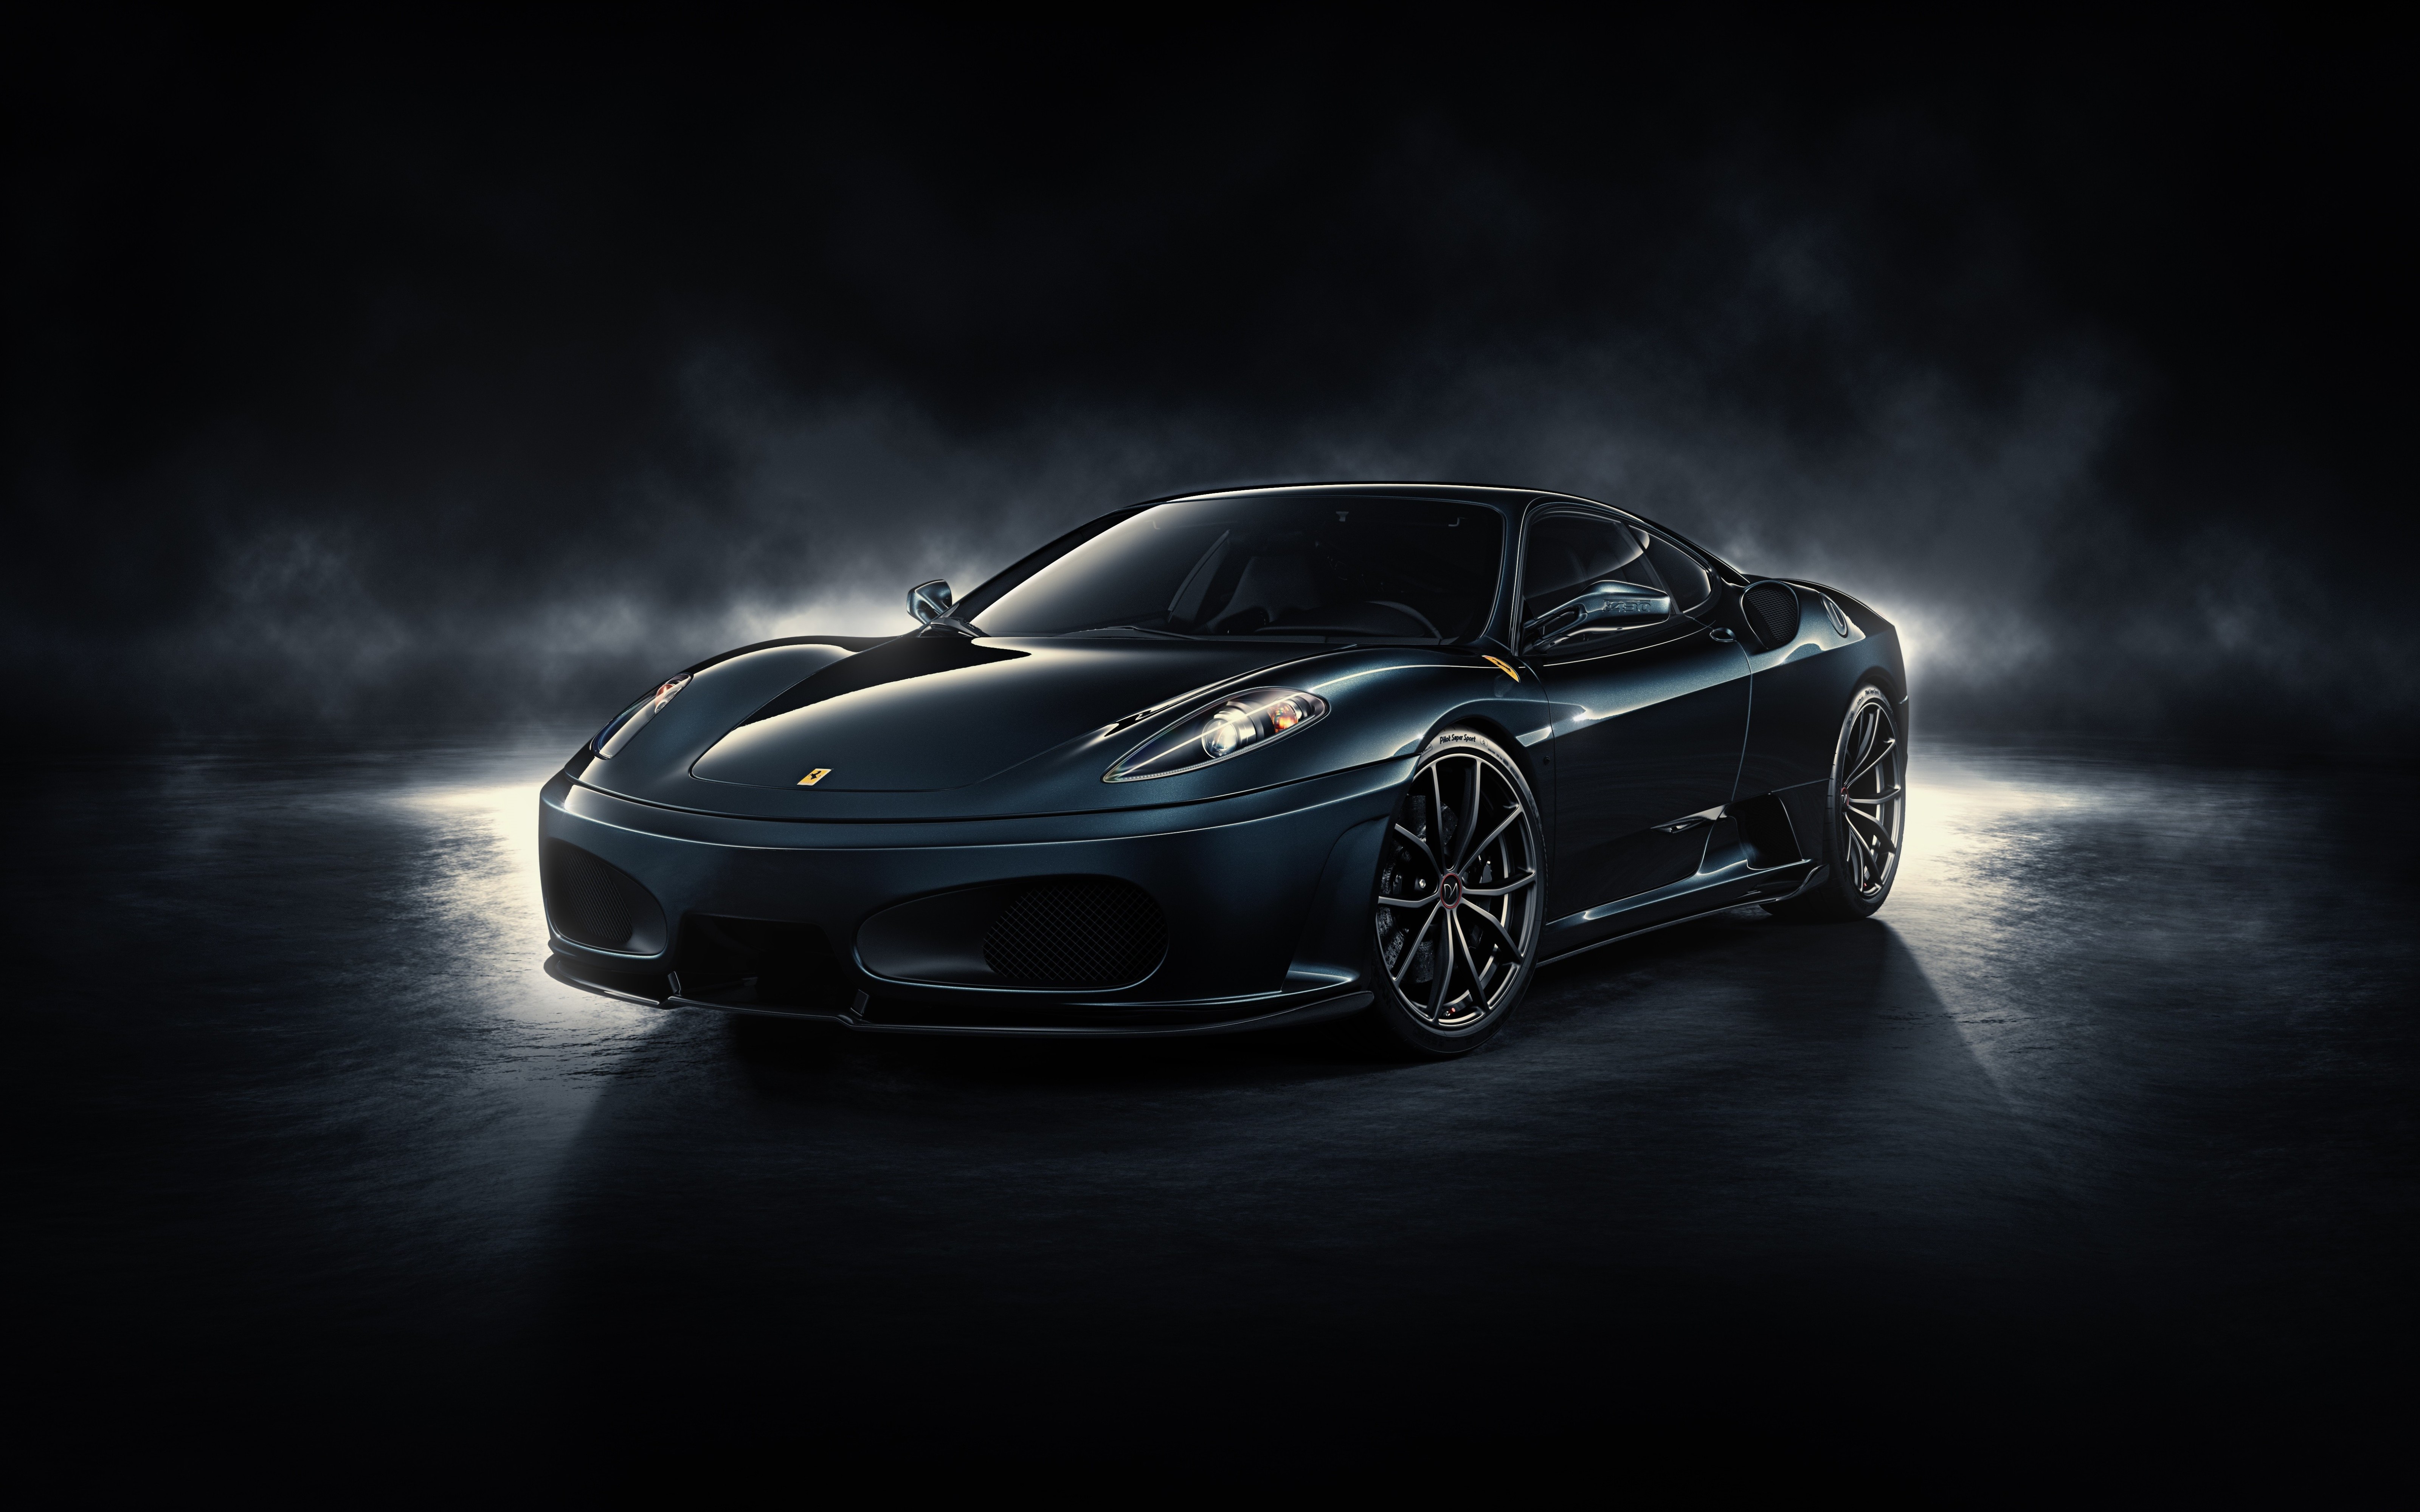 30+ 4K Ferrari Fondos de pantalla | Fondos de Escritorio